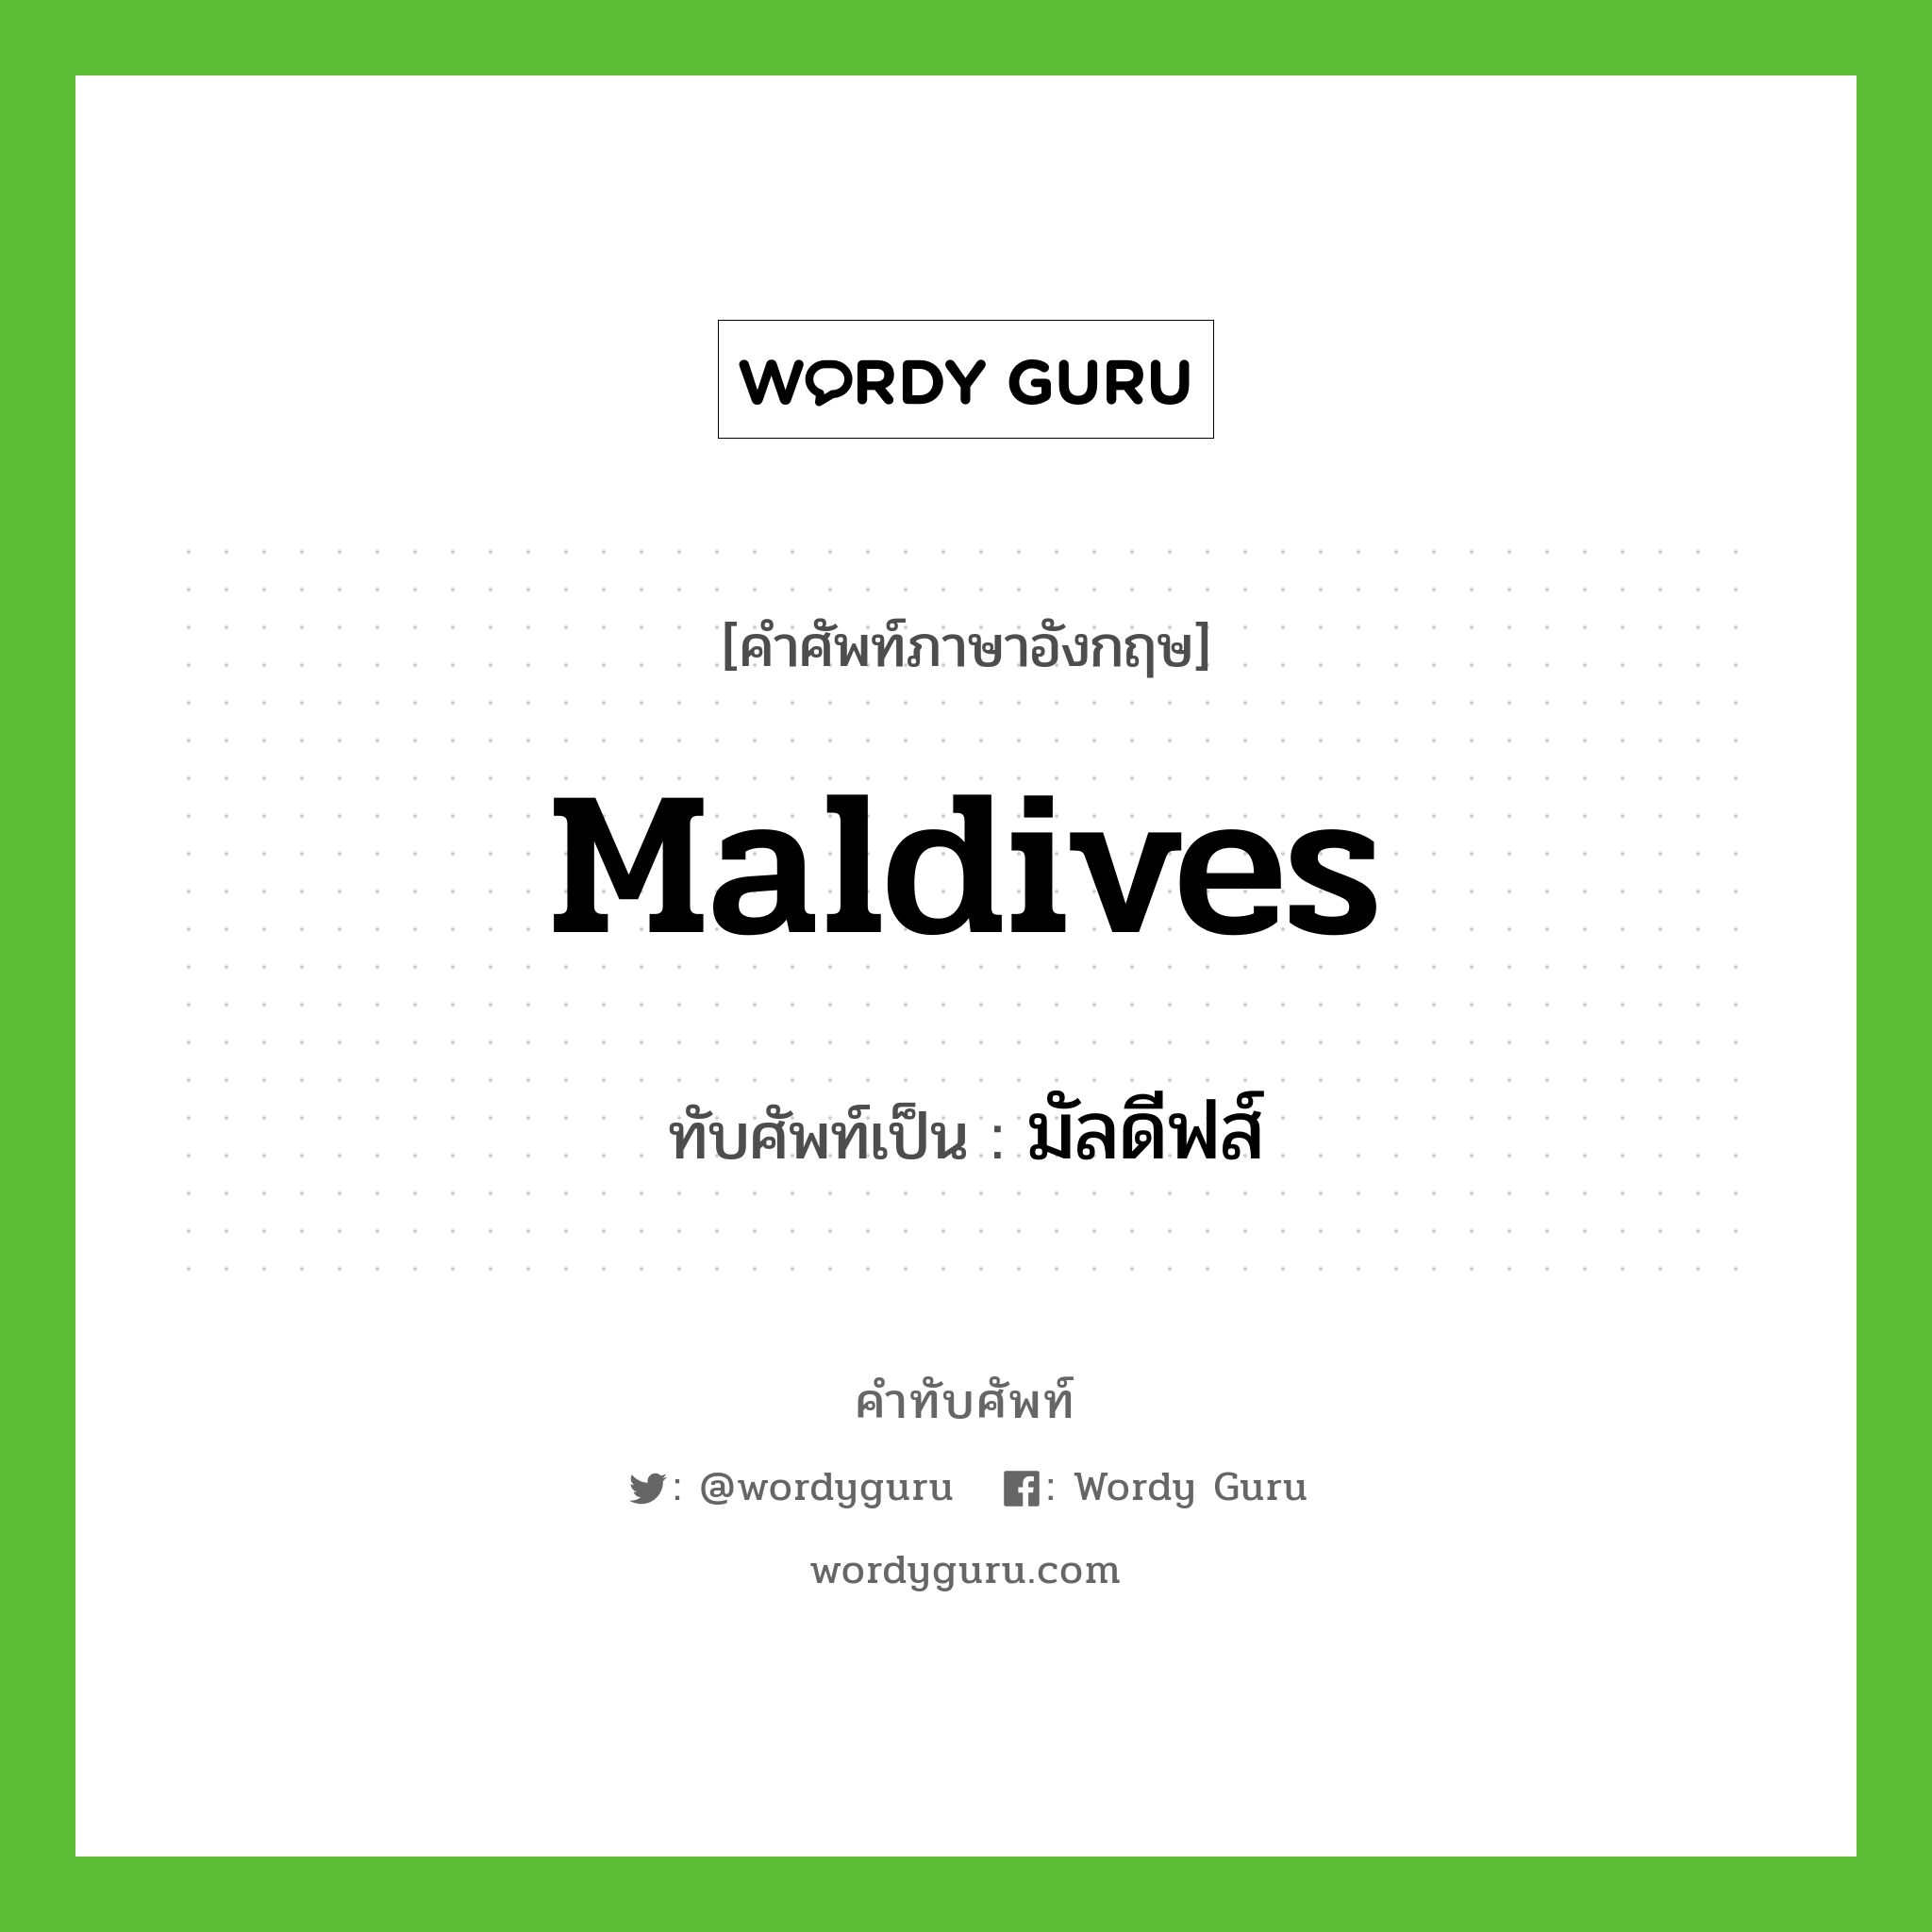 มัลดีฟส์ เขียนอย่างไร?, คำศัพท์ภาษาอังกฤษ มัลดีฟส์ ทับศัพท์เป็น Maldives